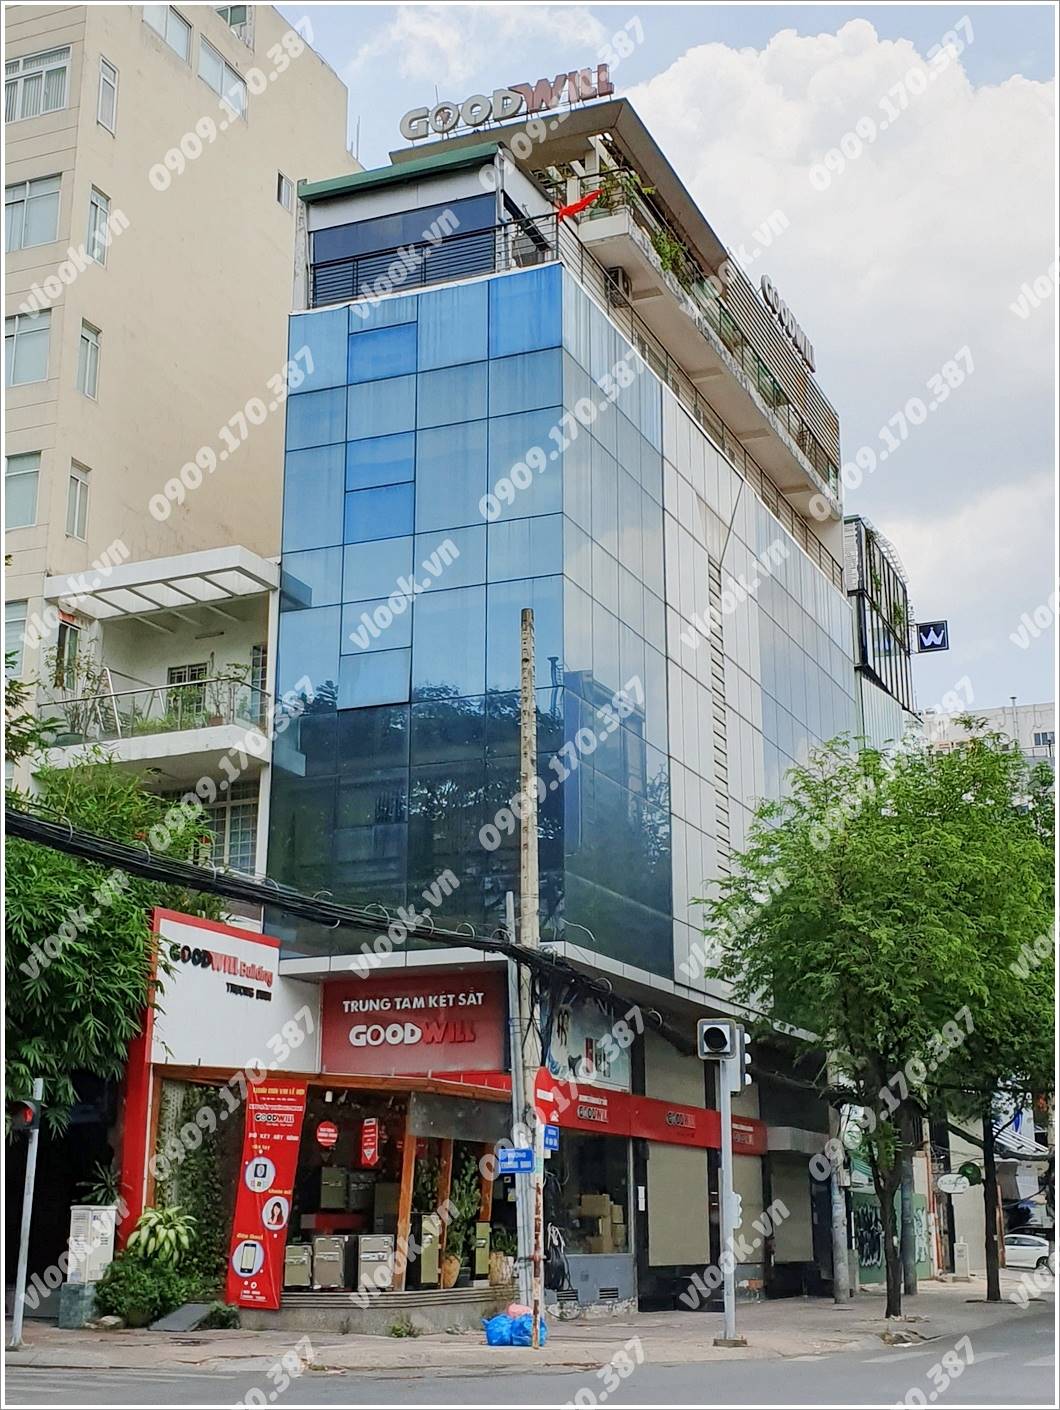 Mặt trước cao ốc cho thuê văn phòng Goodwill Building, Trương Định, Quận 3, TPHCM - vlook.vn